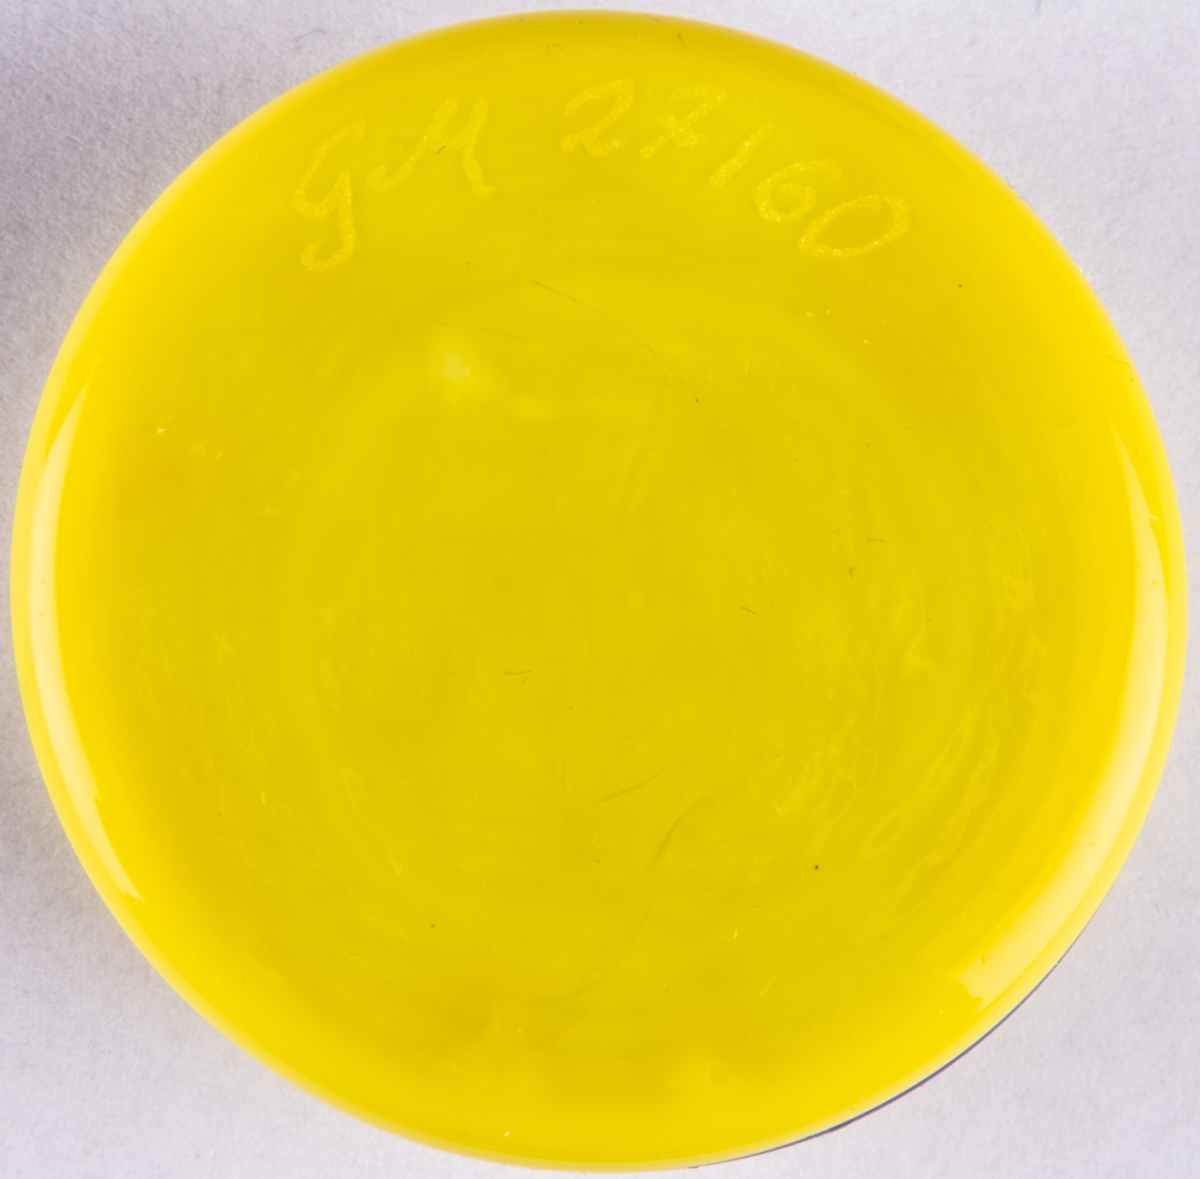 Brevpress, småkaka, i kristall. Uppbyggd av tre cirkelrunda hopfästade plattor i gult, blått, gult. Orrefors glasbruk, design Gunnar Cyrén.